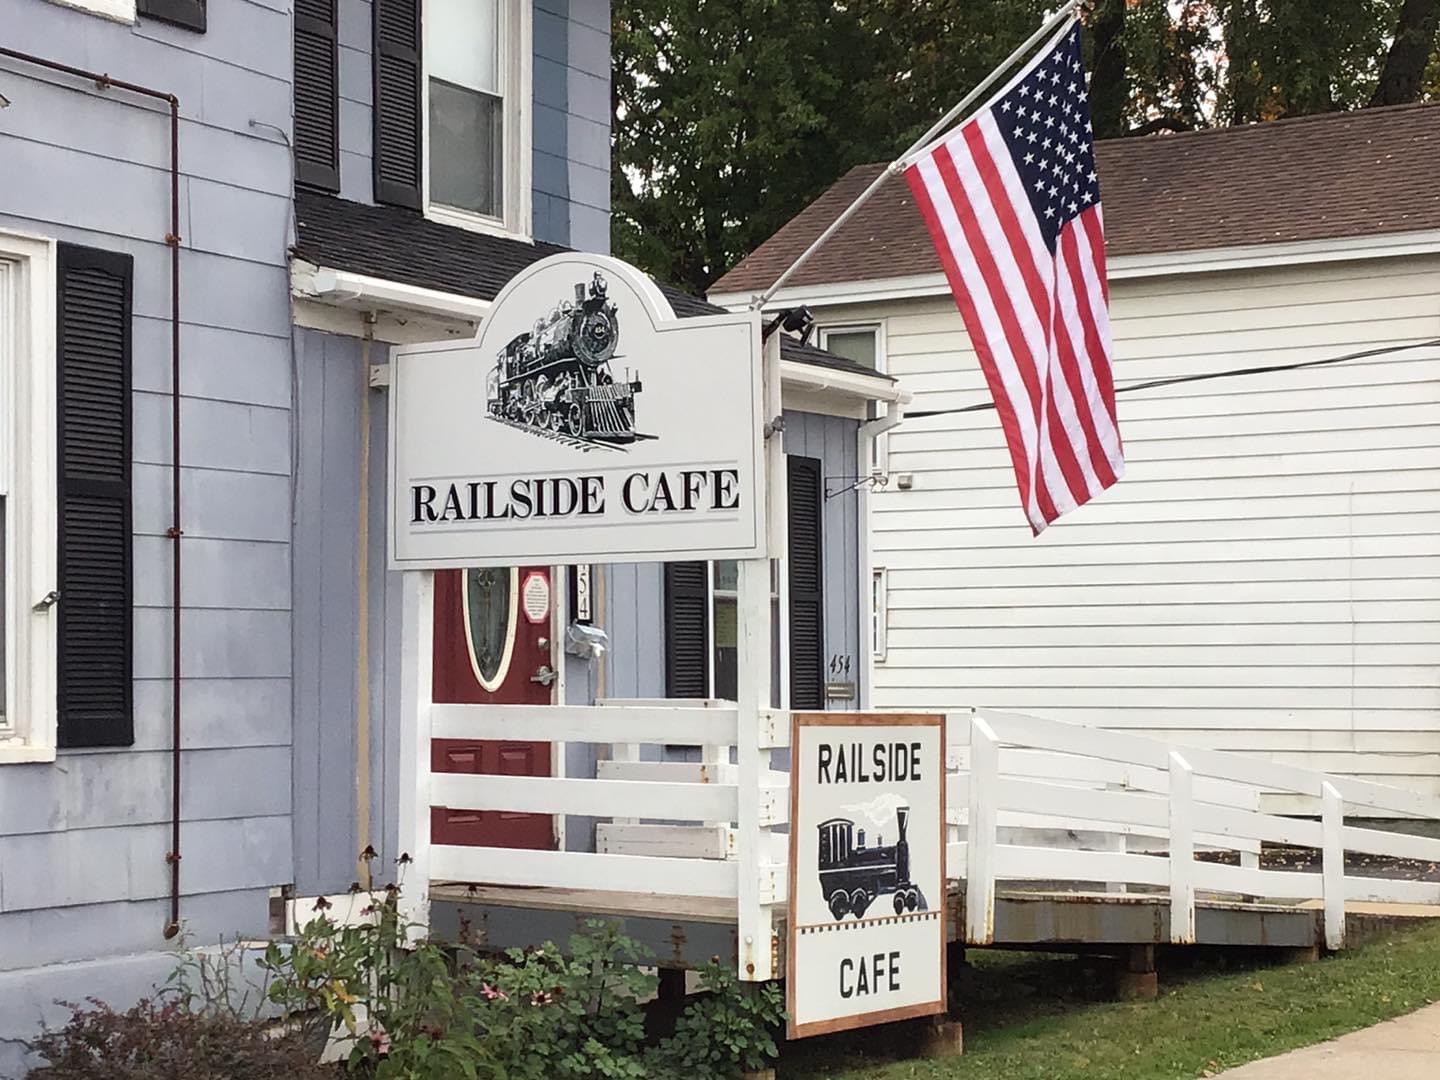 Railside Cafe